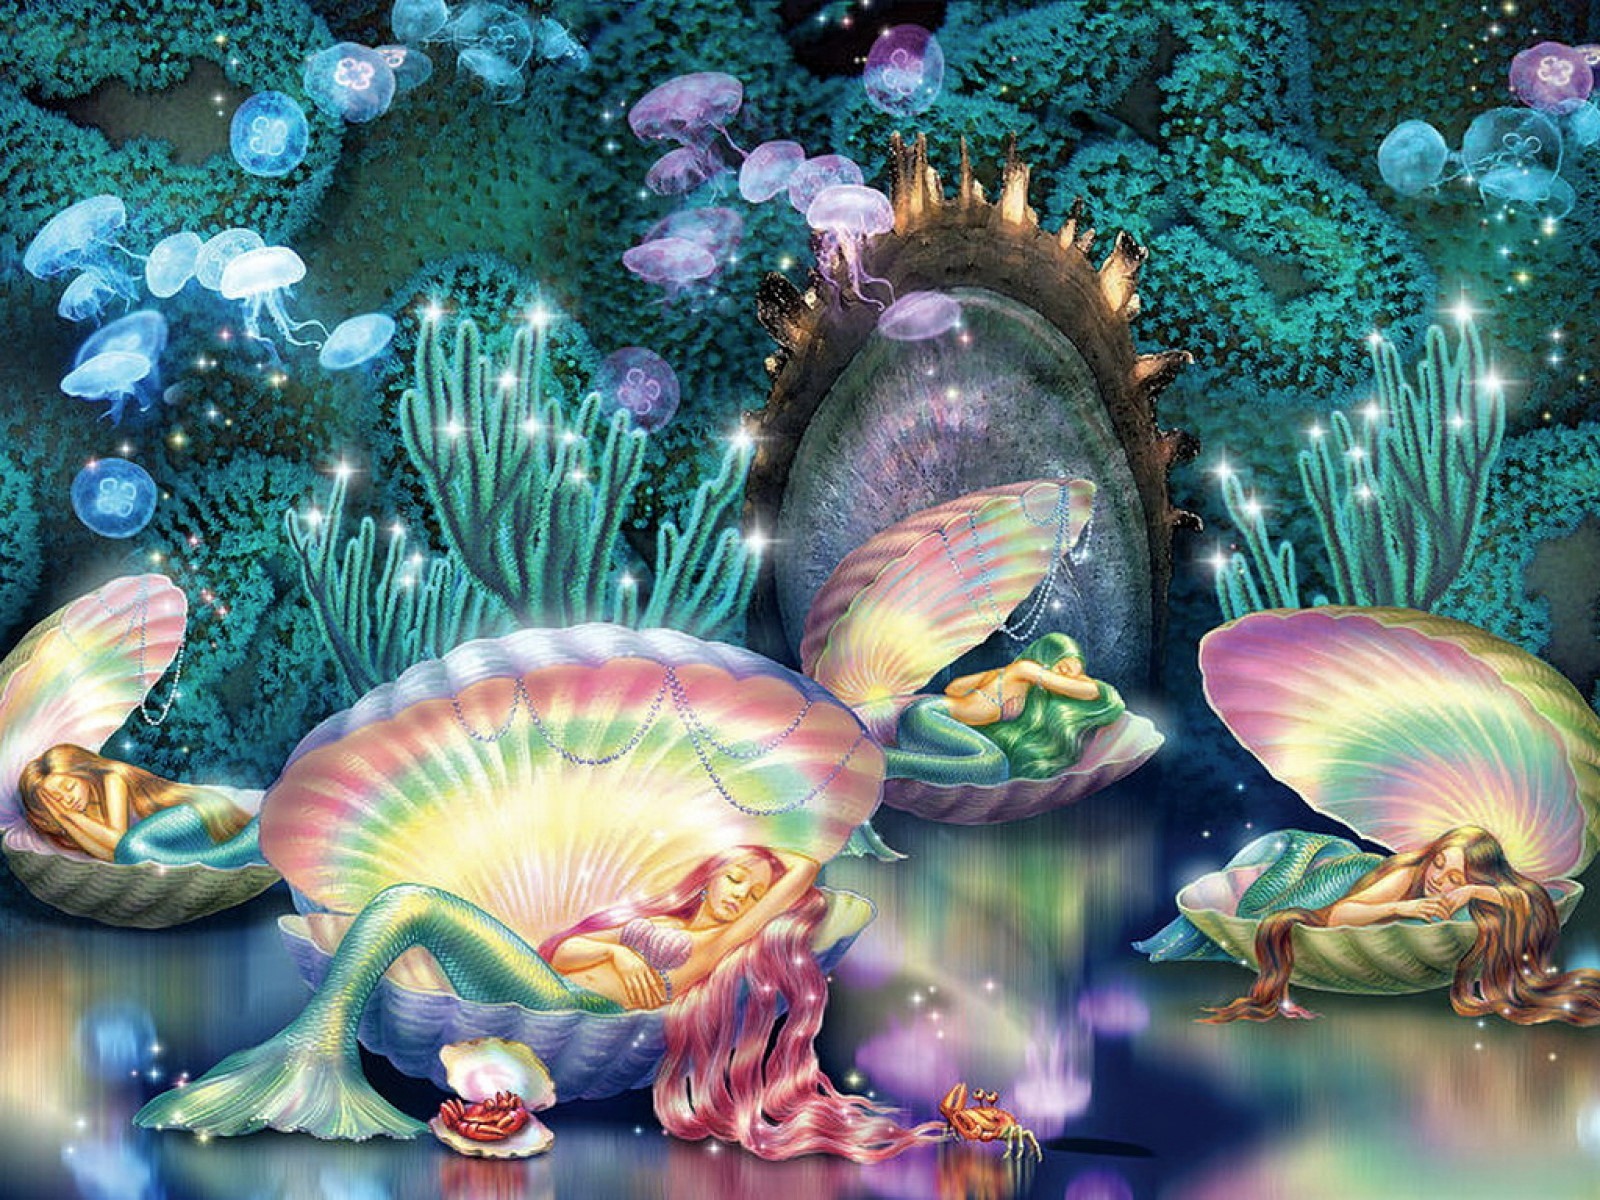 Sleeping Mermaids in Seashells